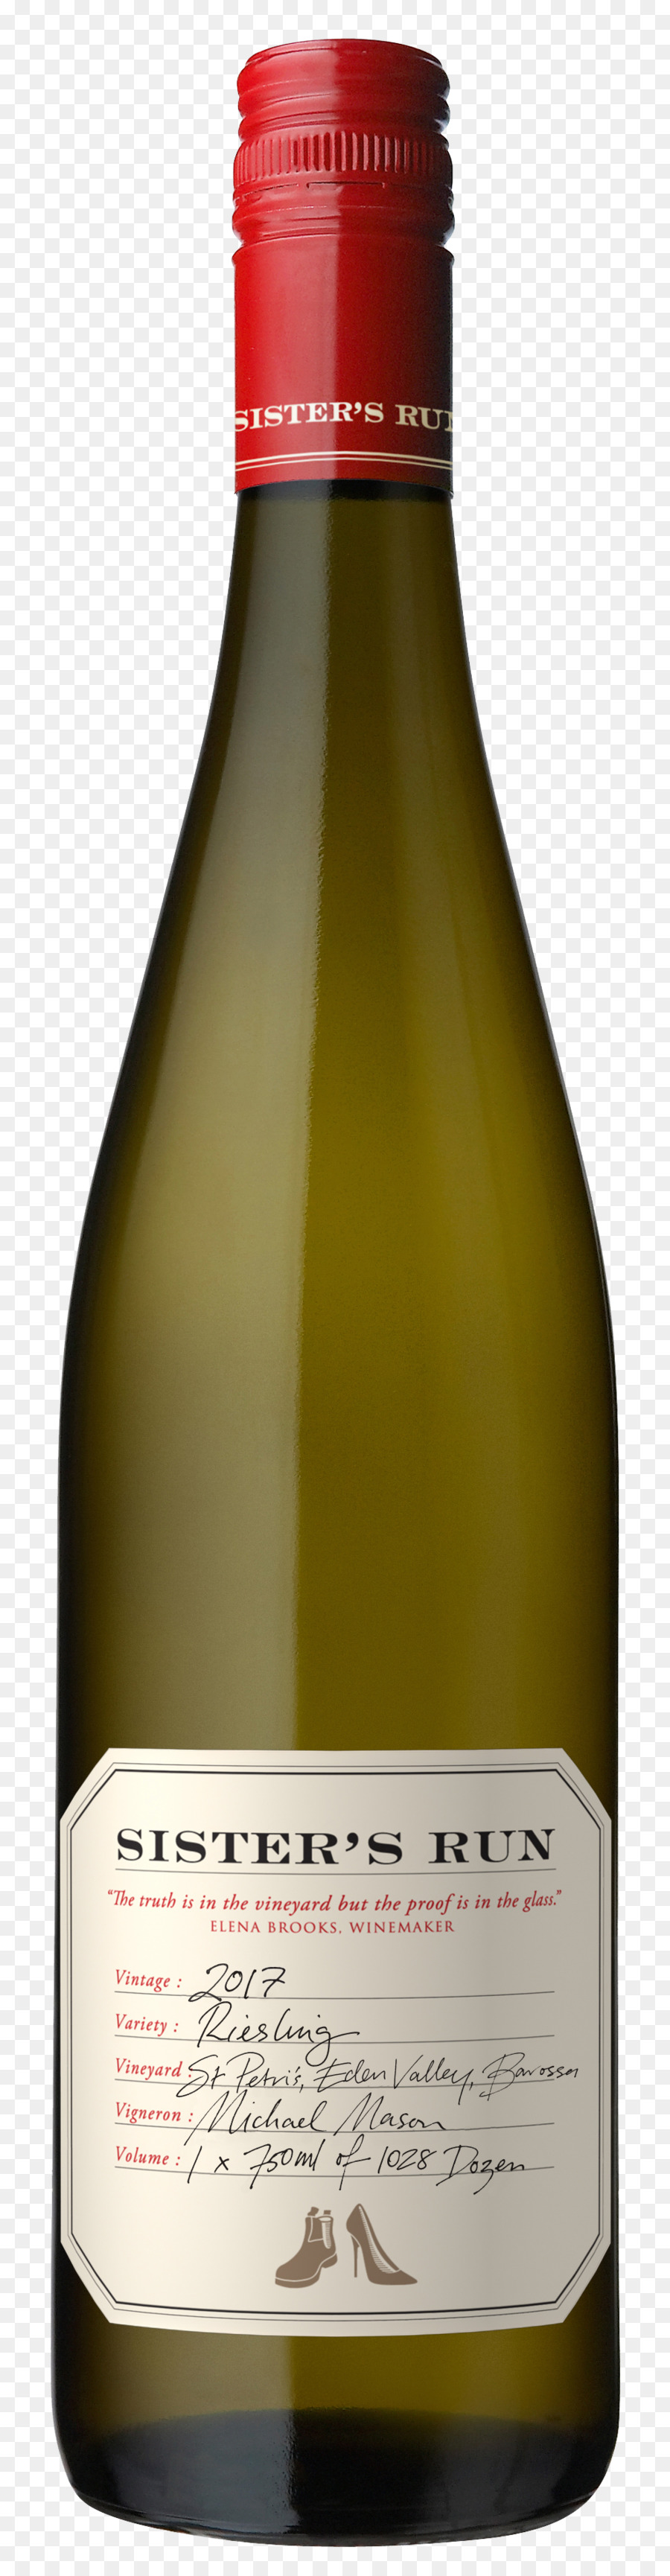 Eden Valley Riesling Weißwein Champagner - Champagner